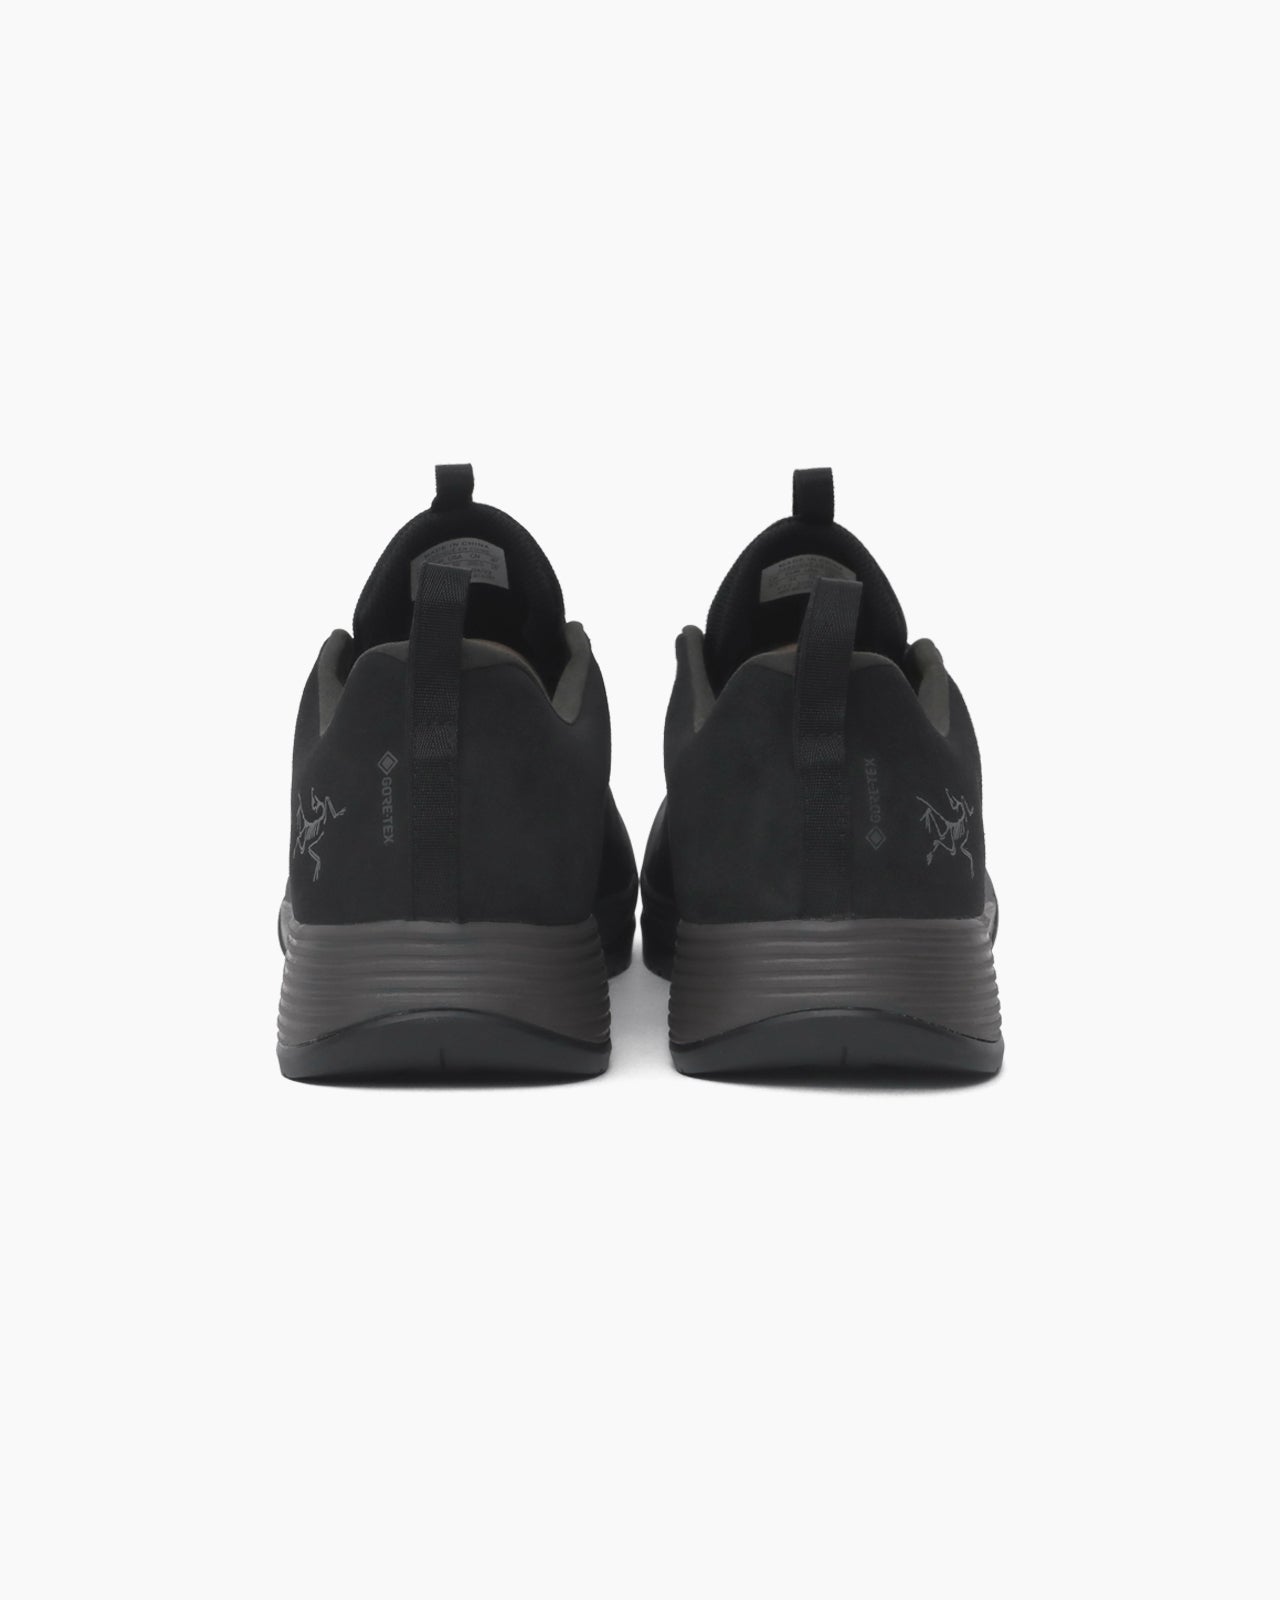 Konseal FL 2 Leather GTX Shoe M Black / Black